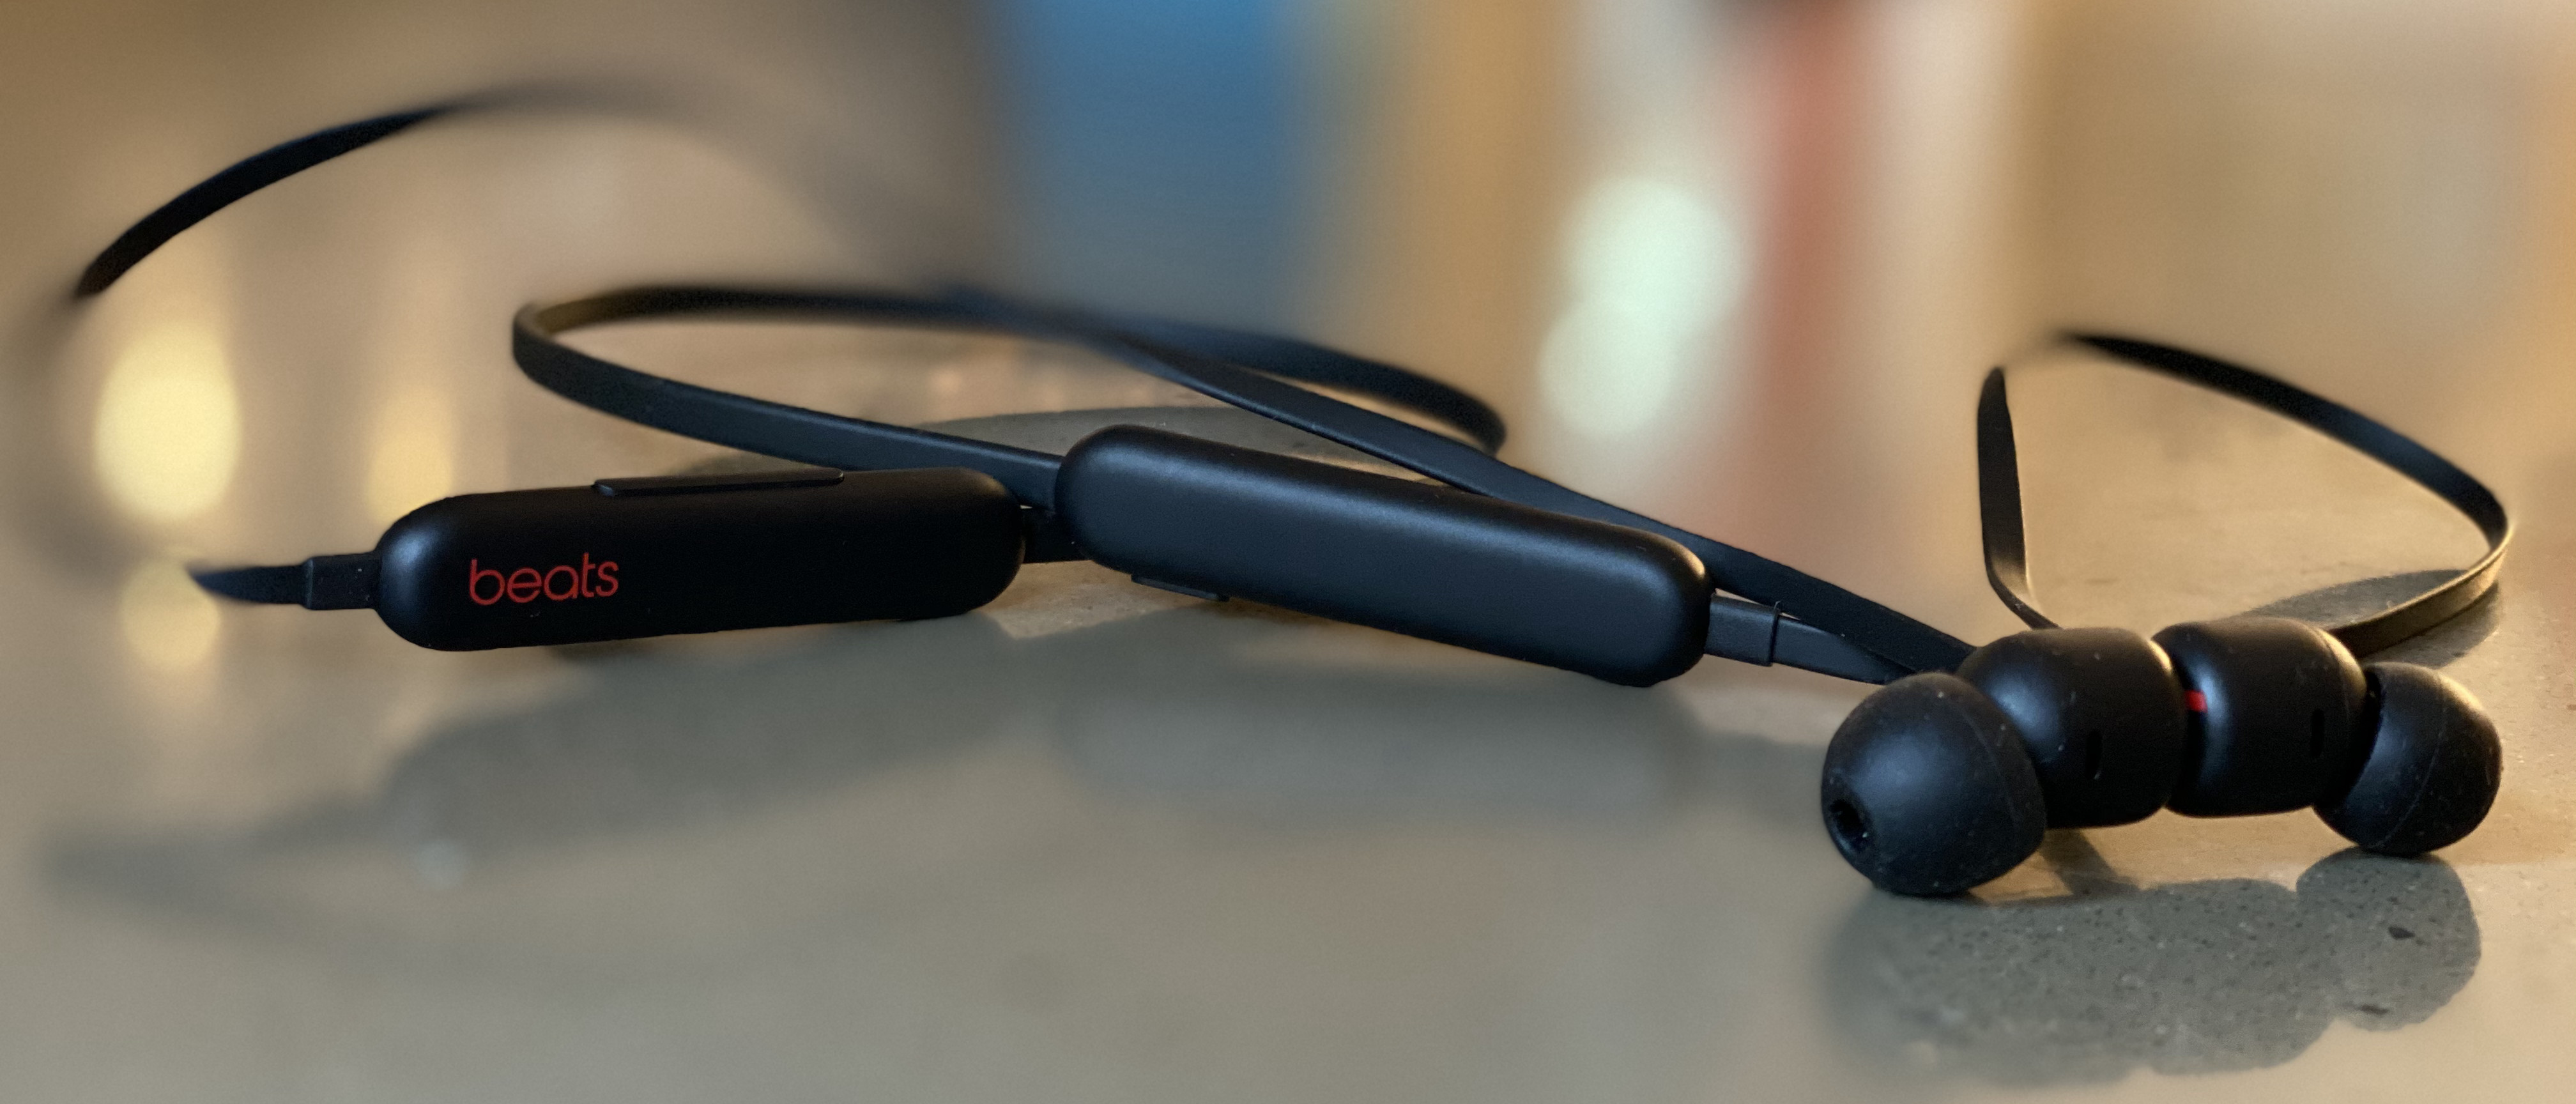 Beats Flex wireless earphones great for iPhone users TechRadar